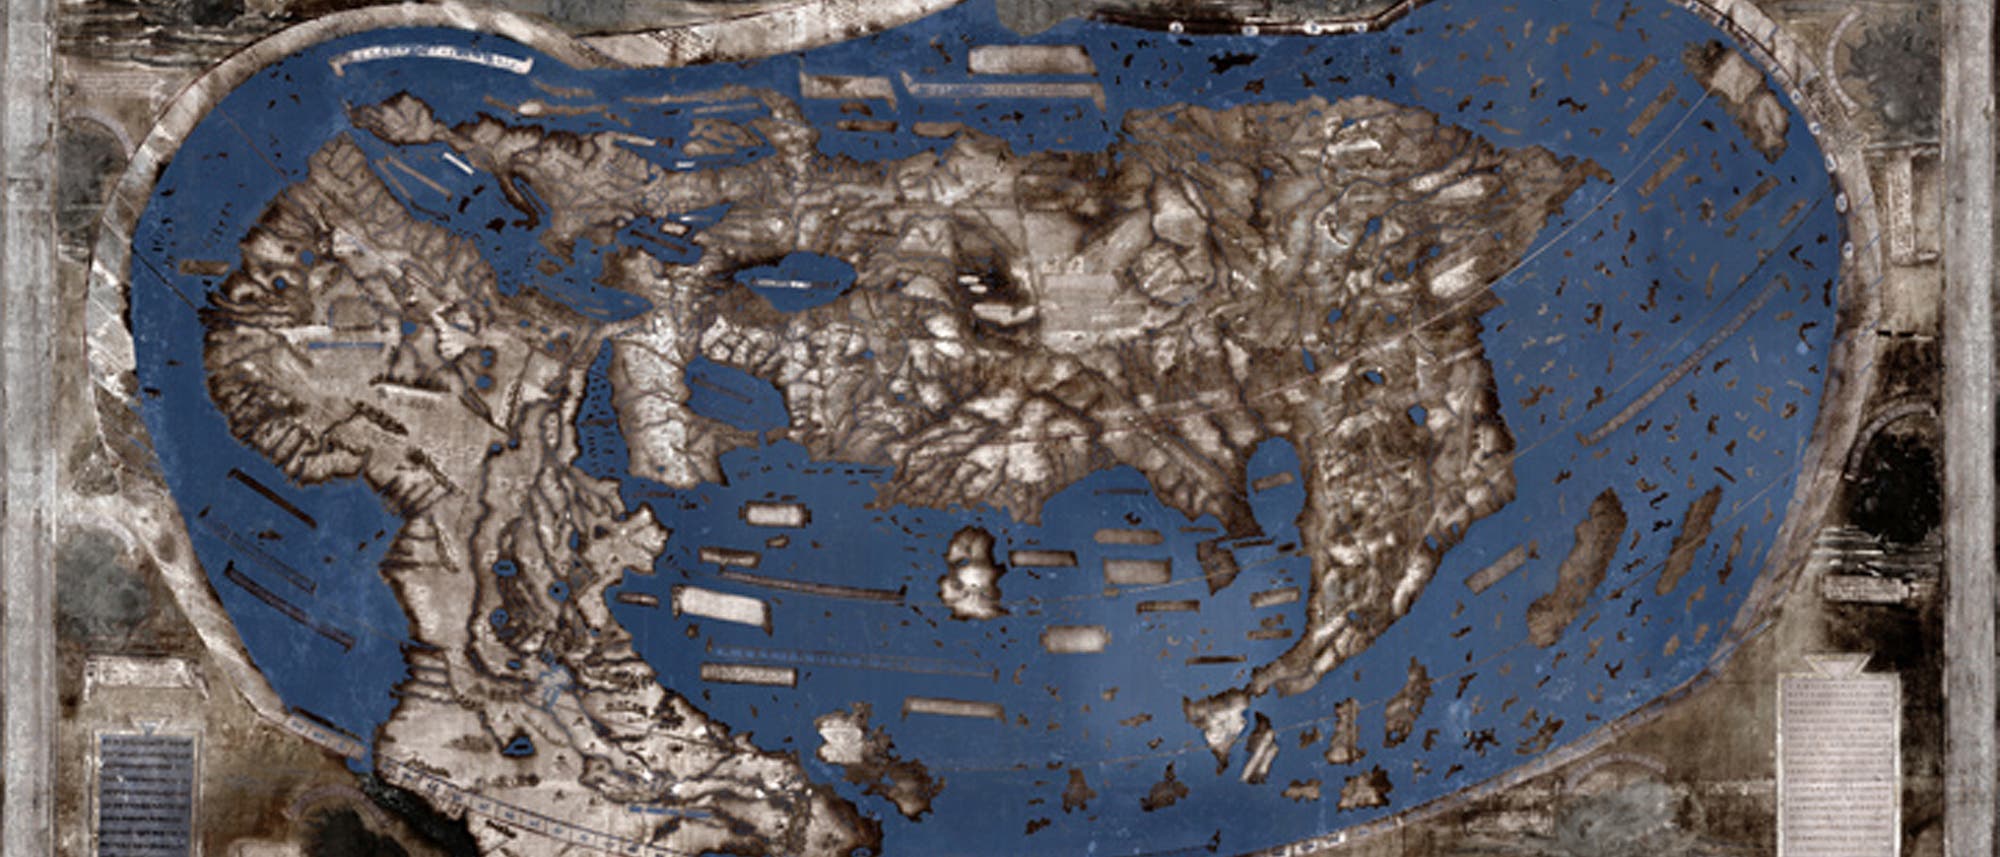 Spektralaufnahme der Martellus-Karte